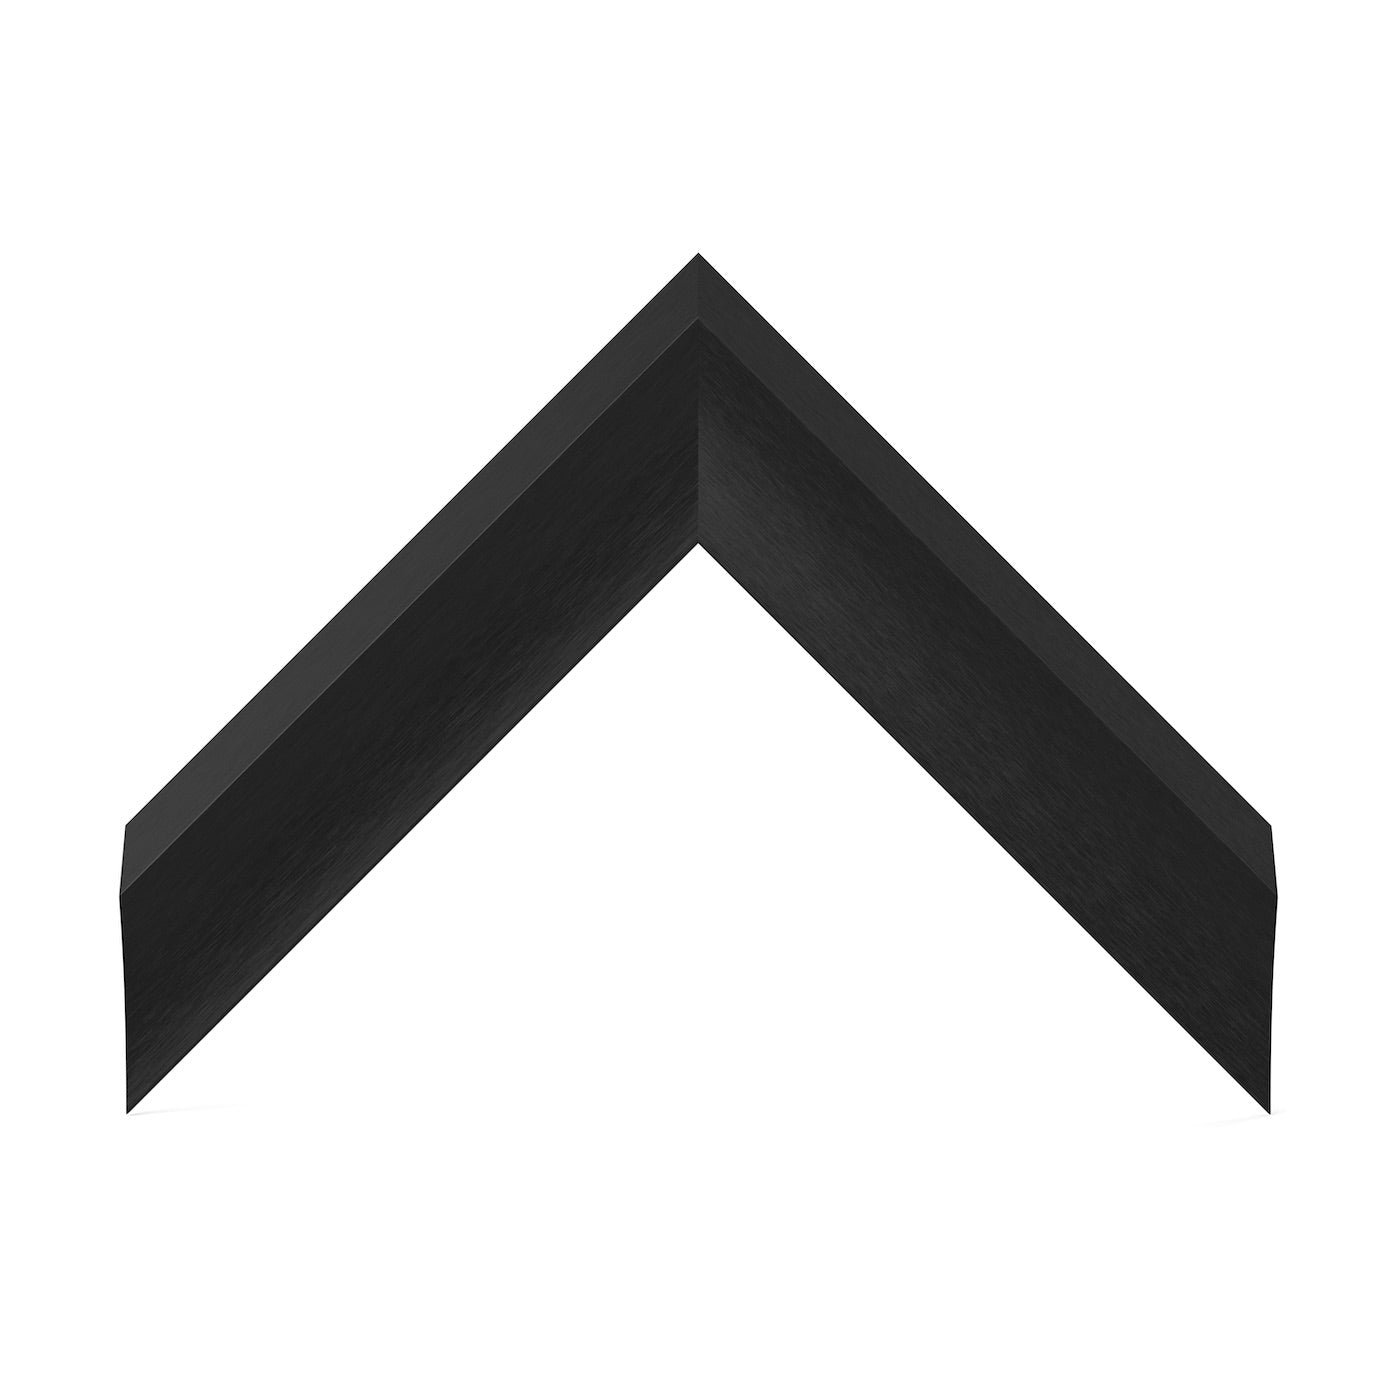 SAMPLE - Anodized Black Alloy - Profile: Prismatic